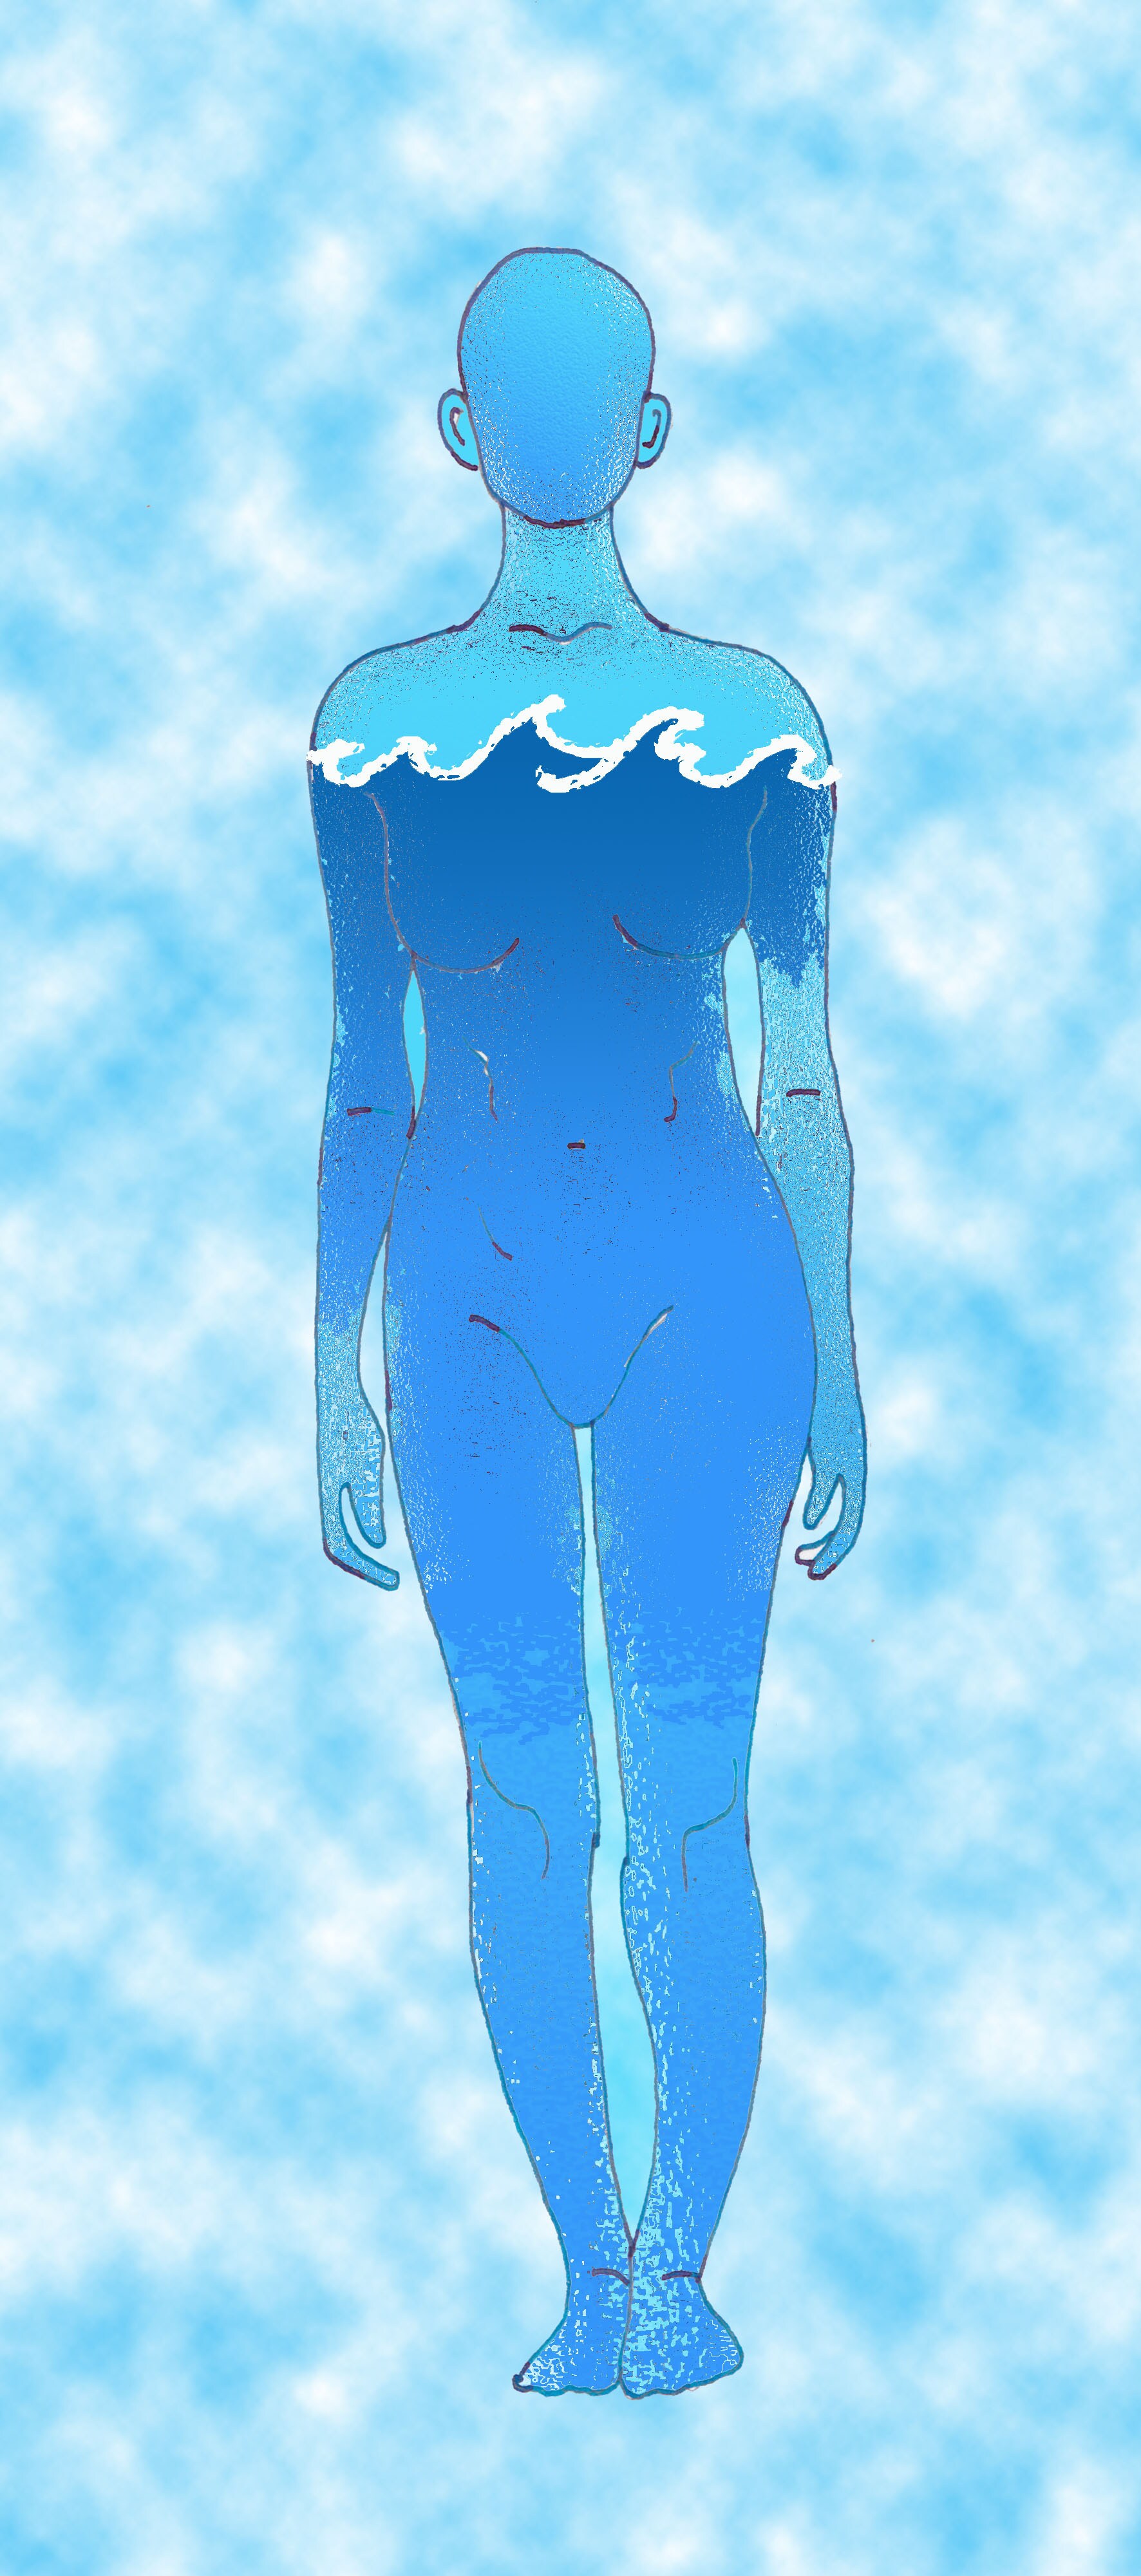 Immagine di una sagoma umana (Per leggerne la descrizione proseguire nel link). Corpo di donna stilizzato su sfondo di cielo diurno.